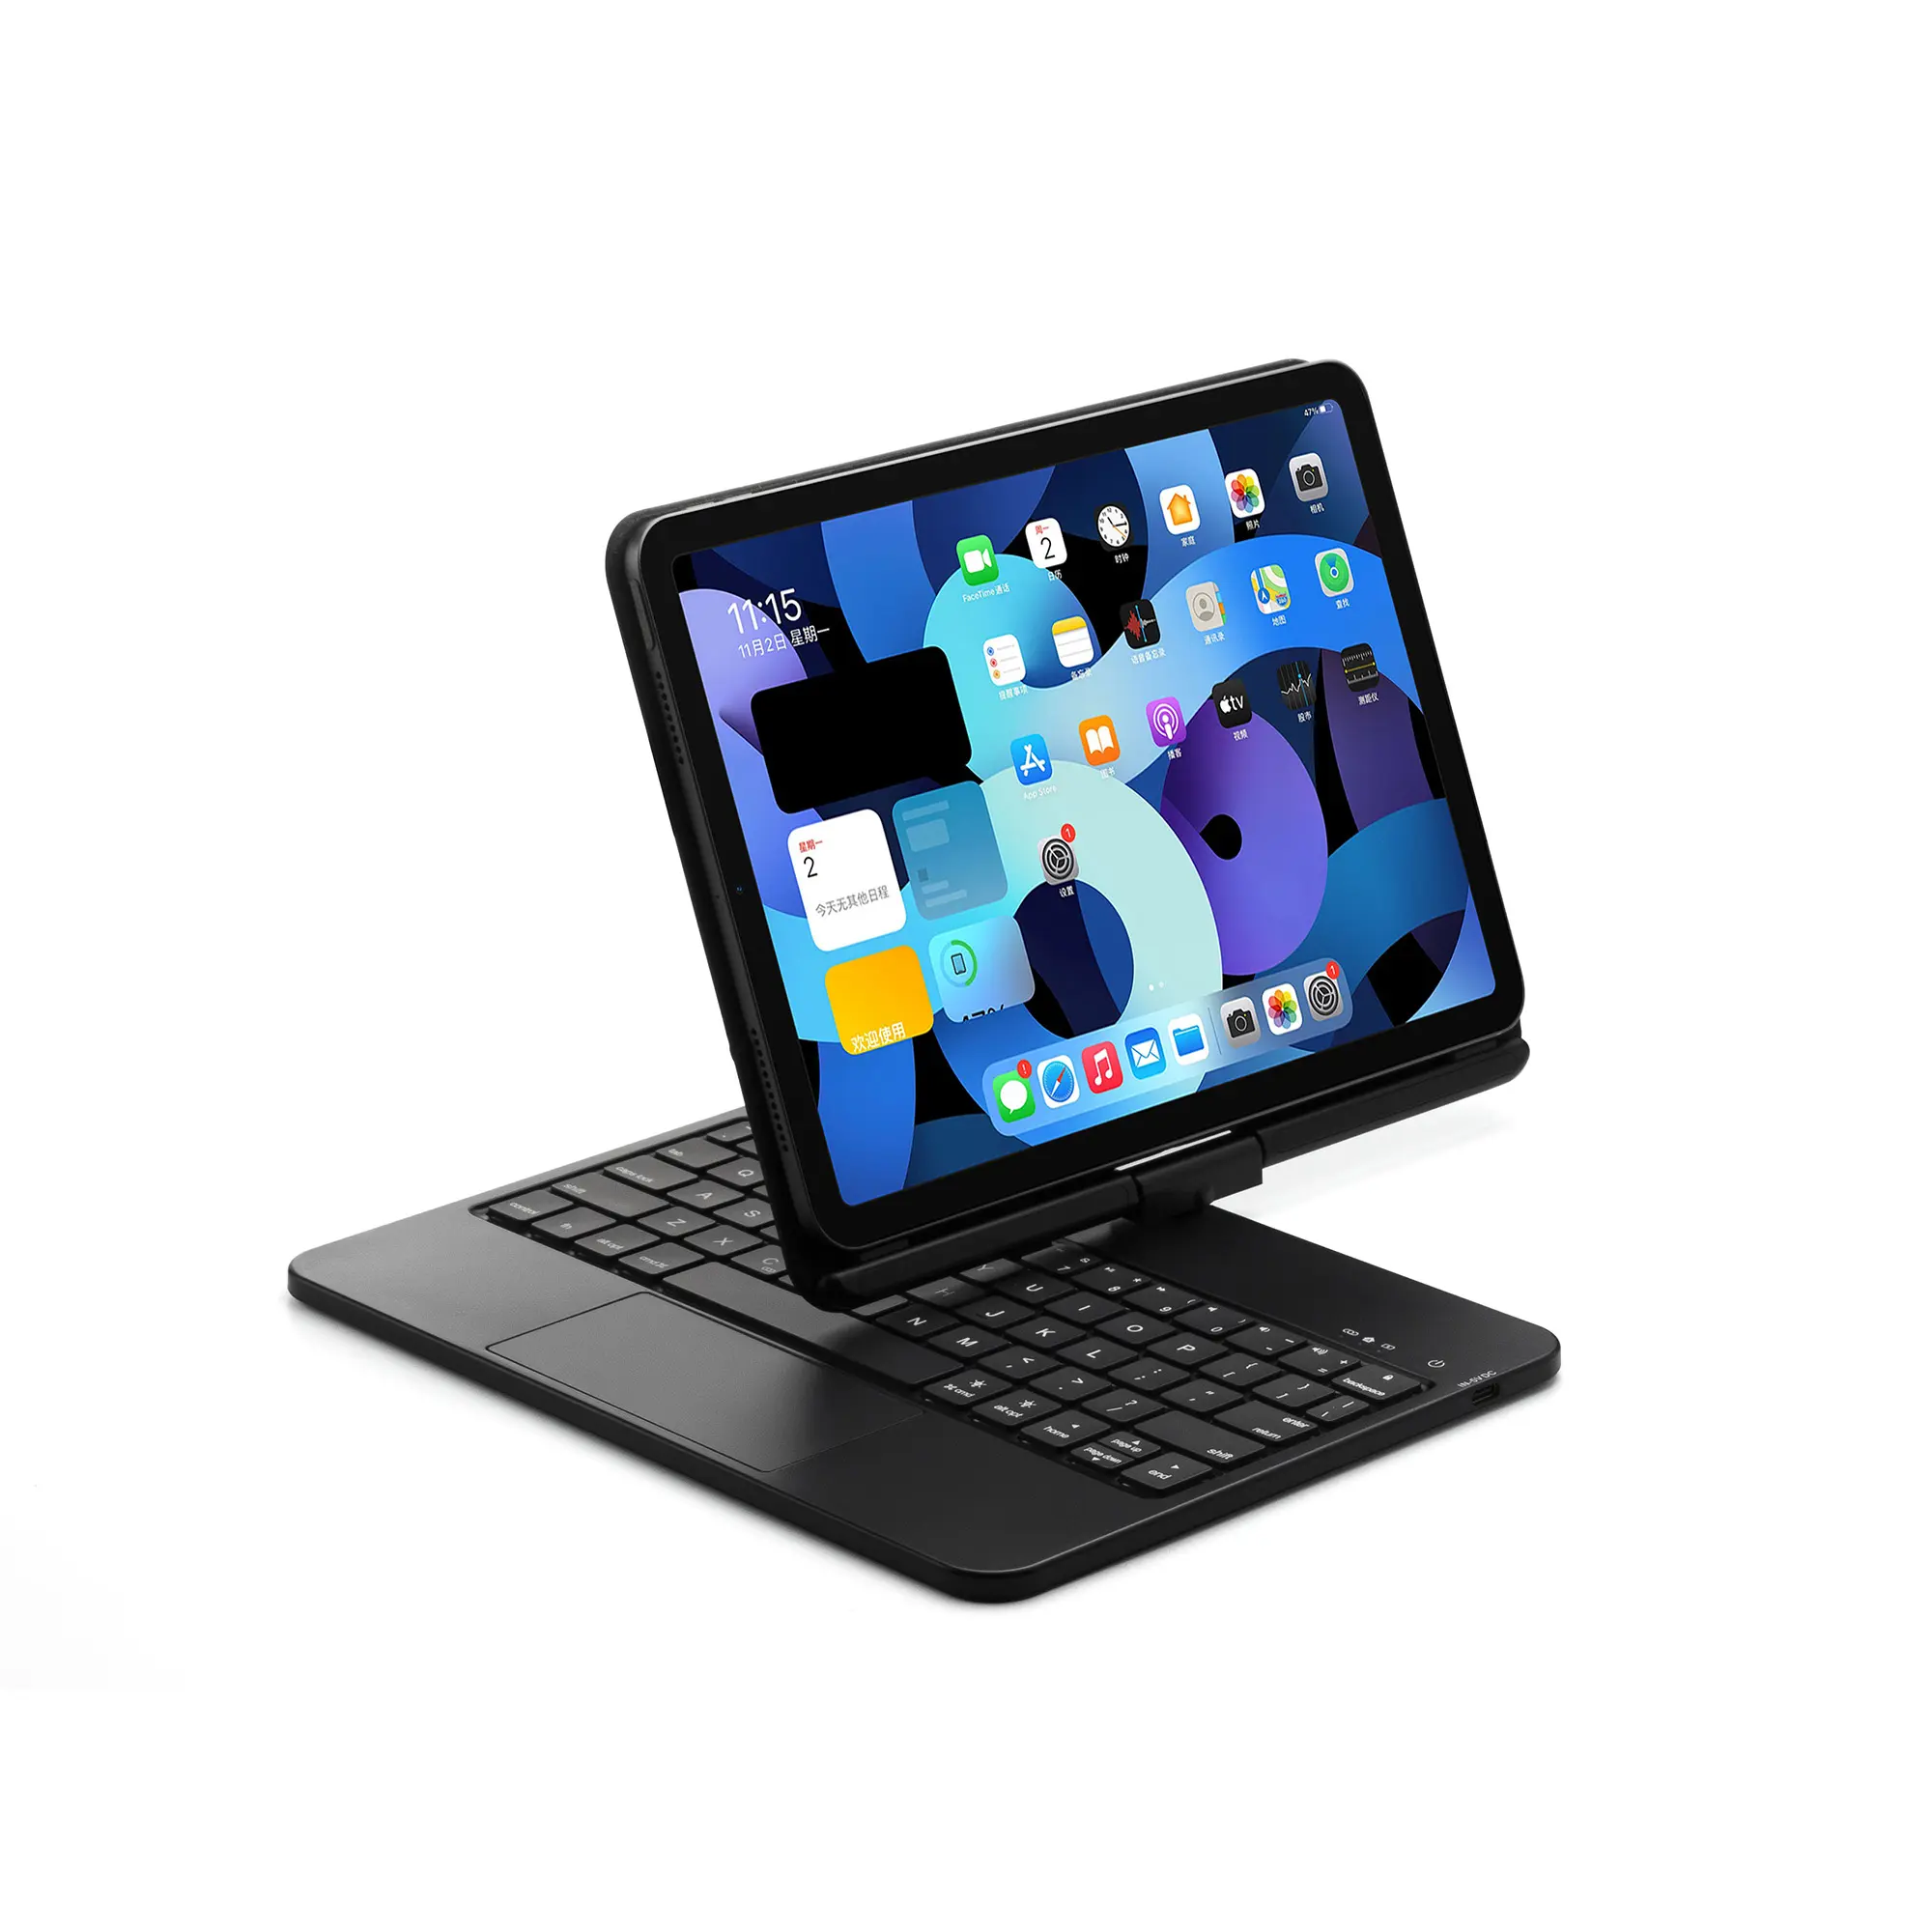 لوحة مفاتيح ذكية مع إضاءة خلفية RGB, تناسب أجهزة iPad Air 4 5 10.9 Pro 11 حافظة لوحة مفاتيح ناعمة من ABS قابلة للدوران 360 درجة ، لوحة مفاتيح ذكية سحرية يابانية عربية مع إضاءة خلفية RGB